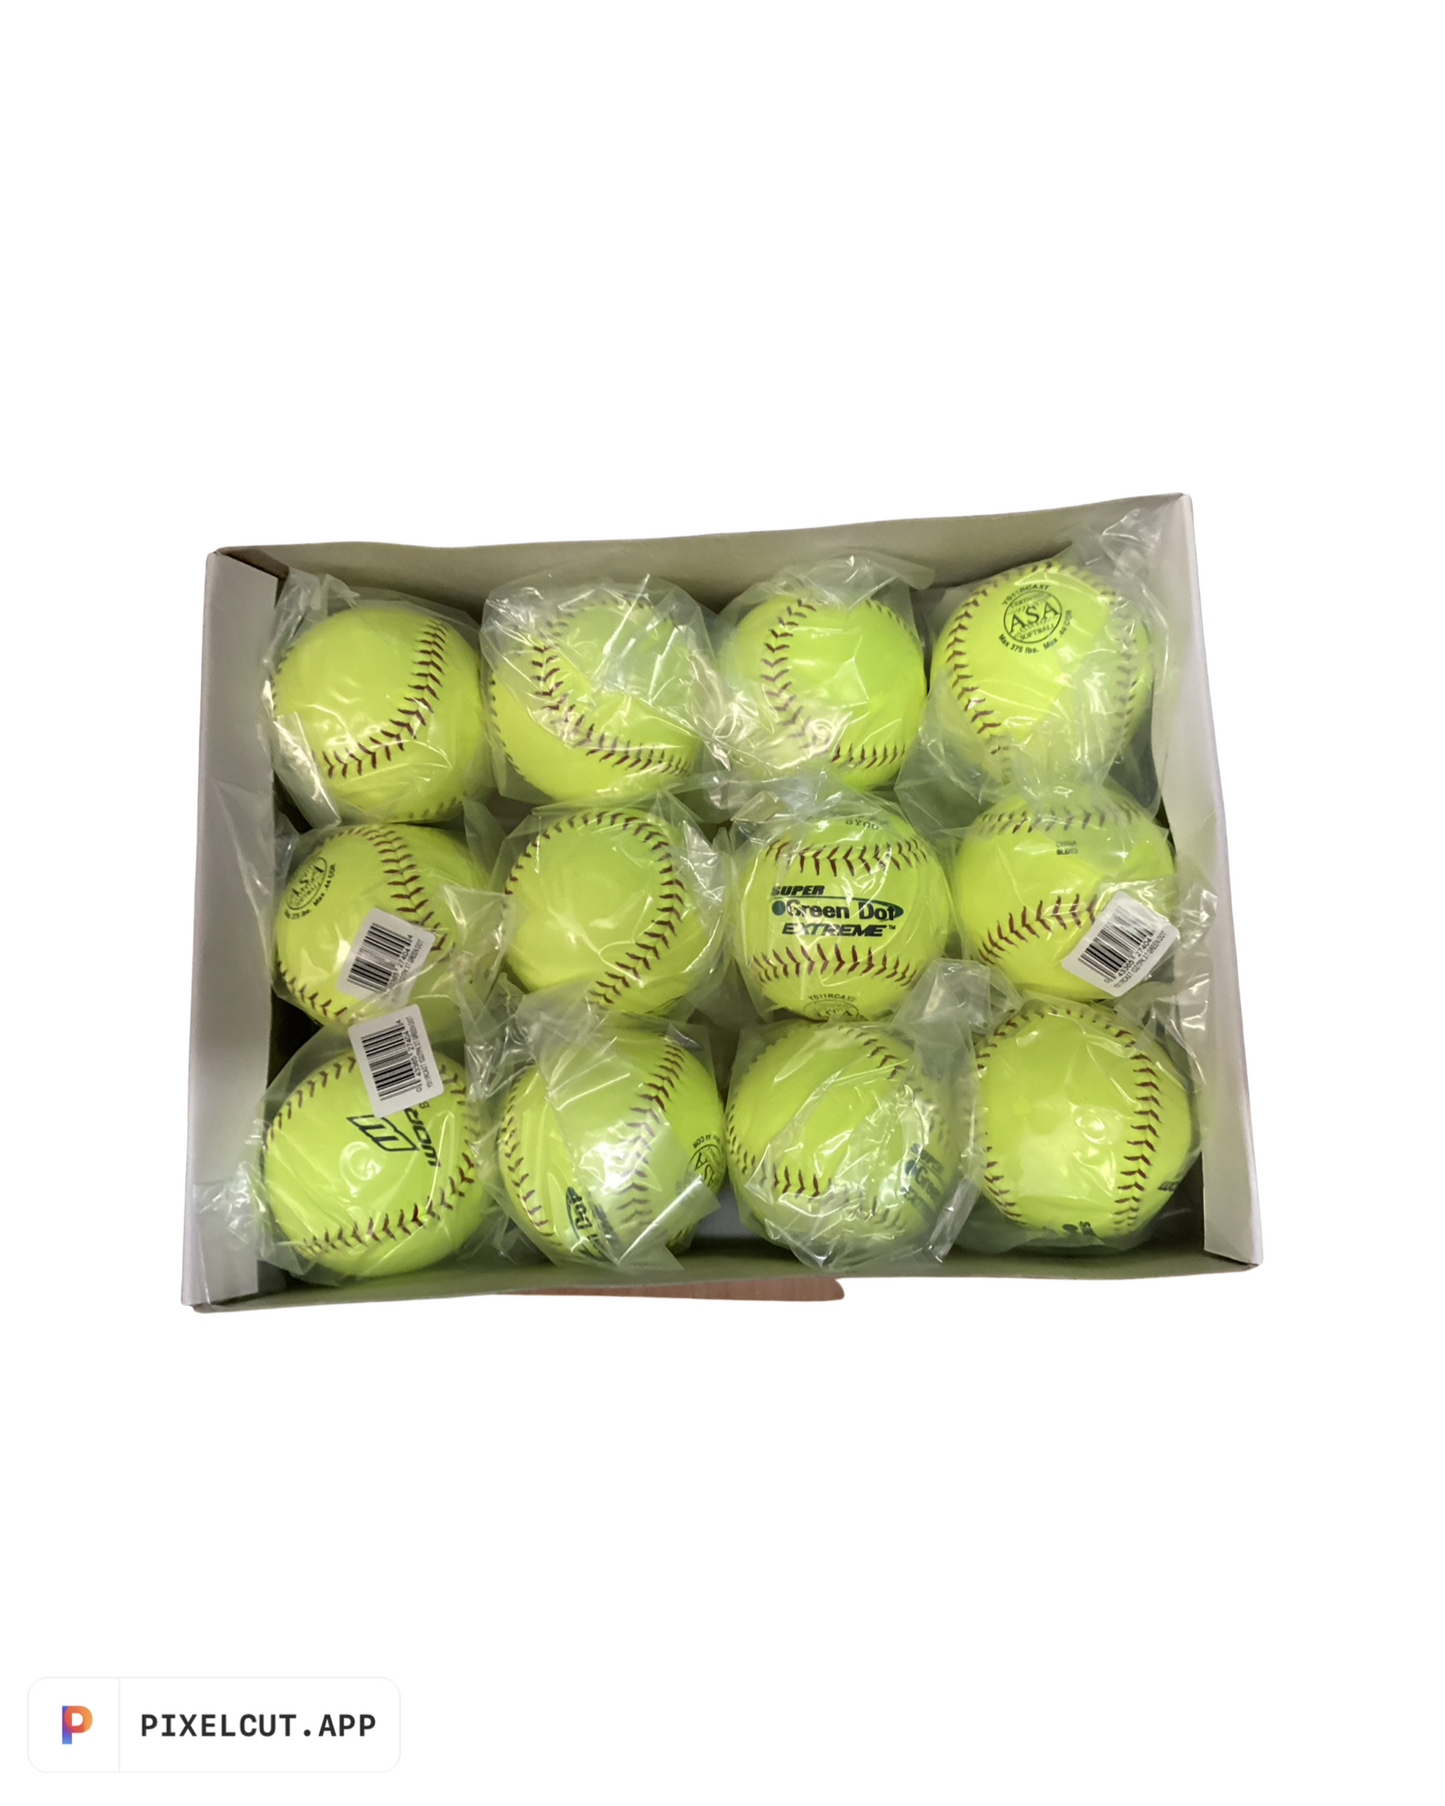 Softballs-Dozen- Size 11